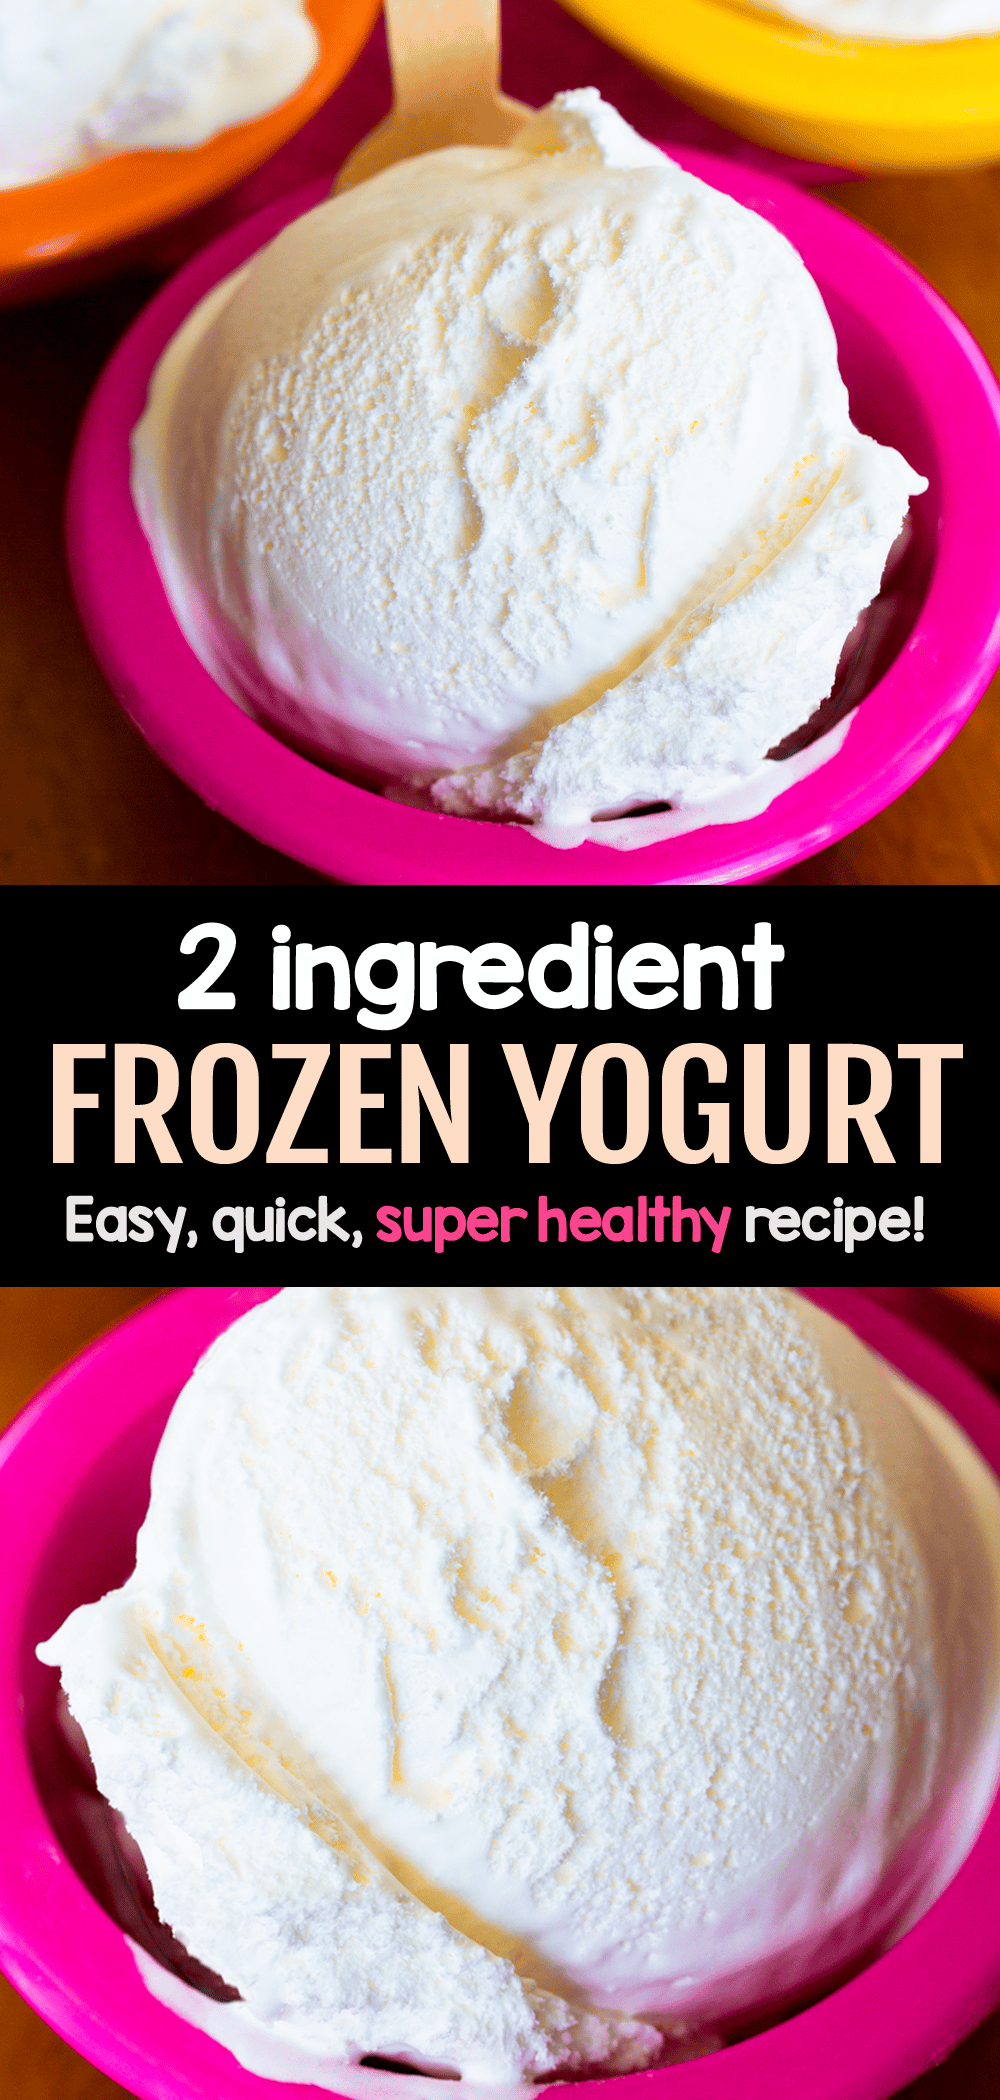 Homemade Frozen Yogurt - Just Two Ingredients!